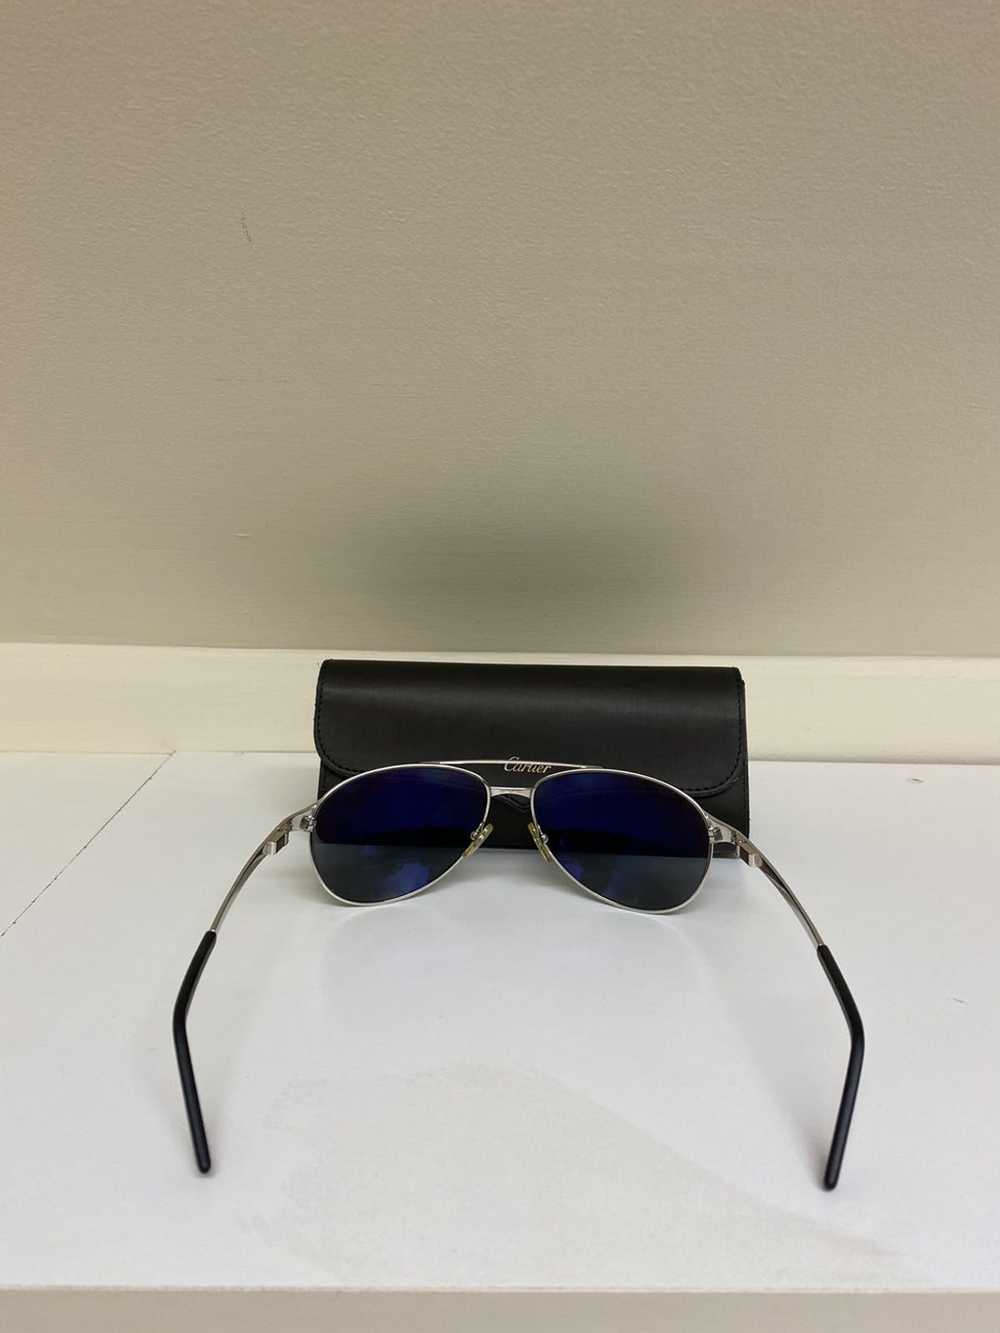 Cartier Cartier sunglasses - image 5